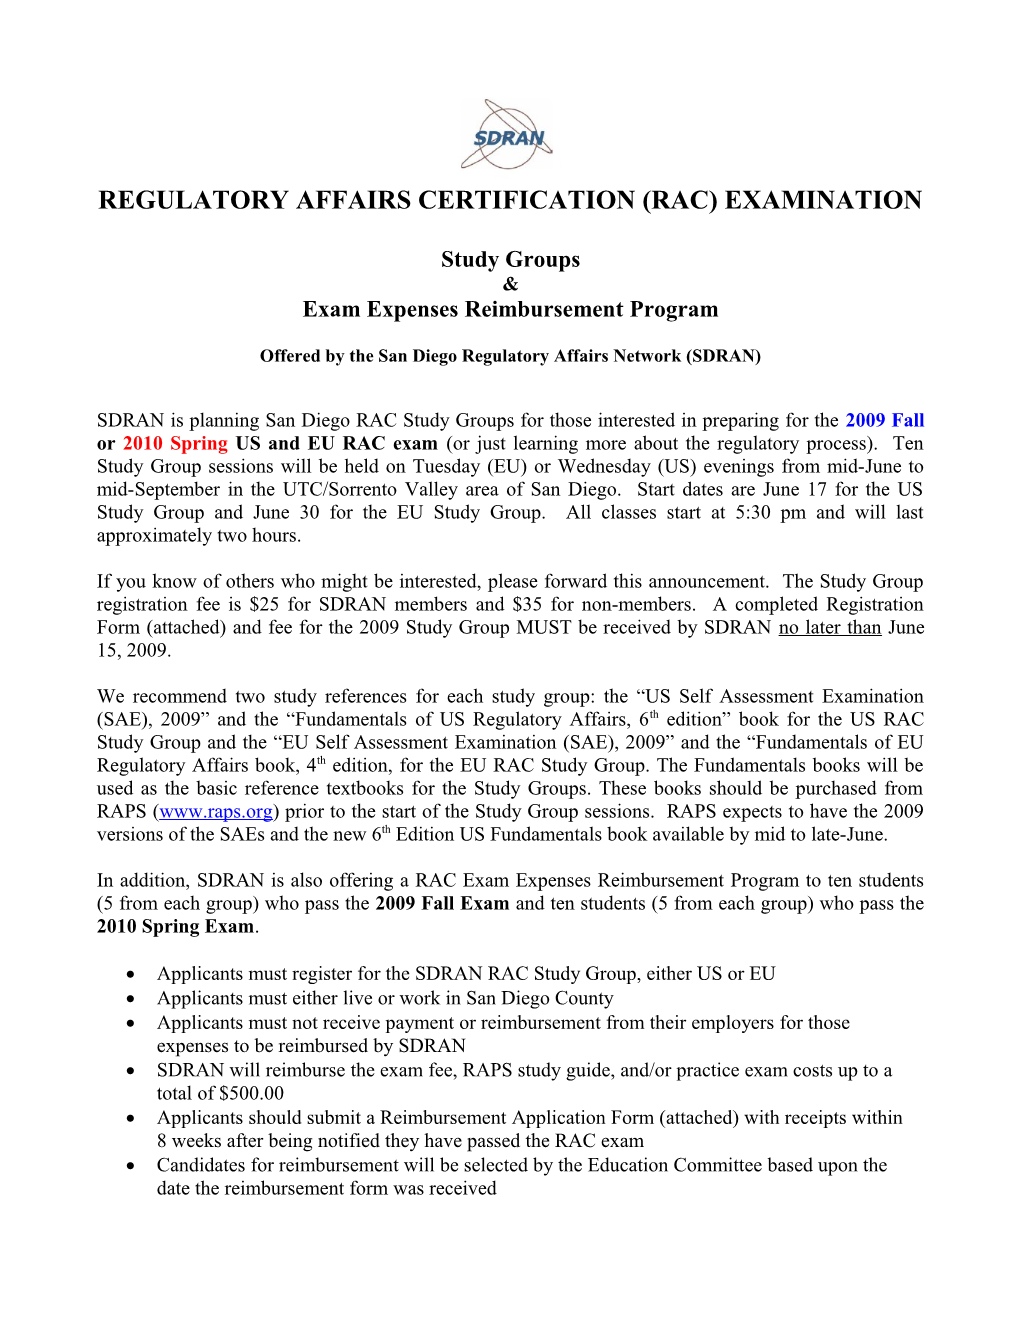 Regulatory Affairs Certification Examination